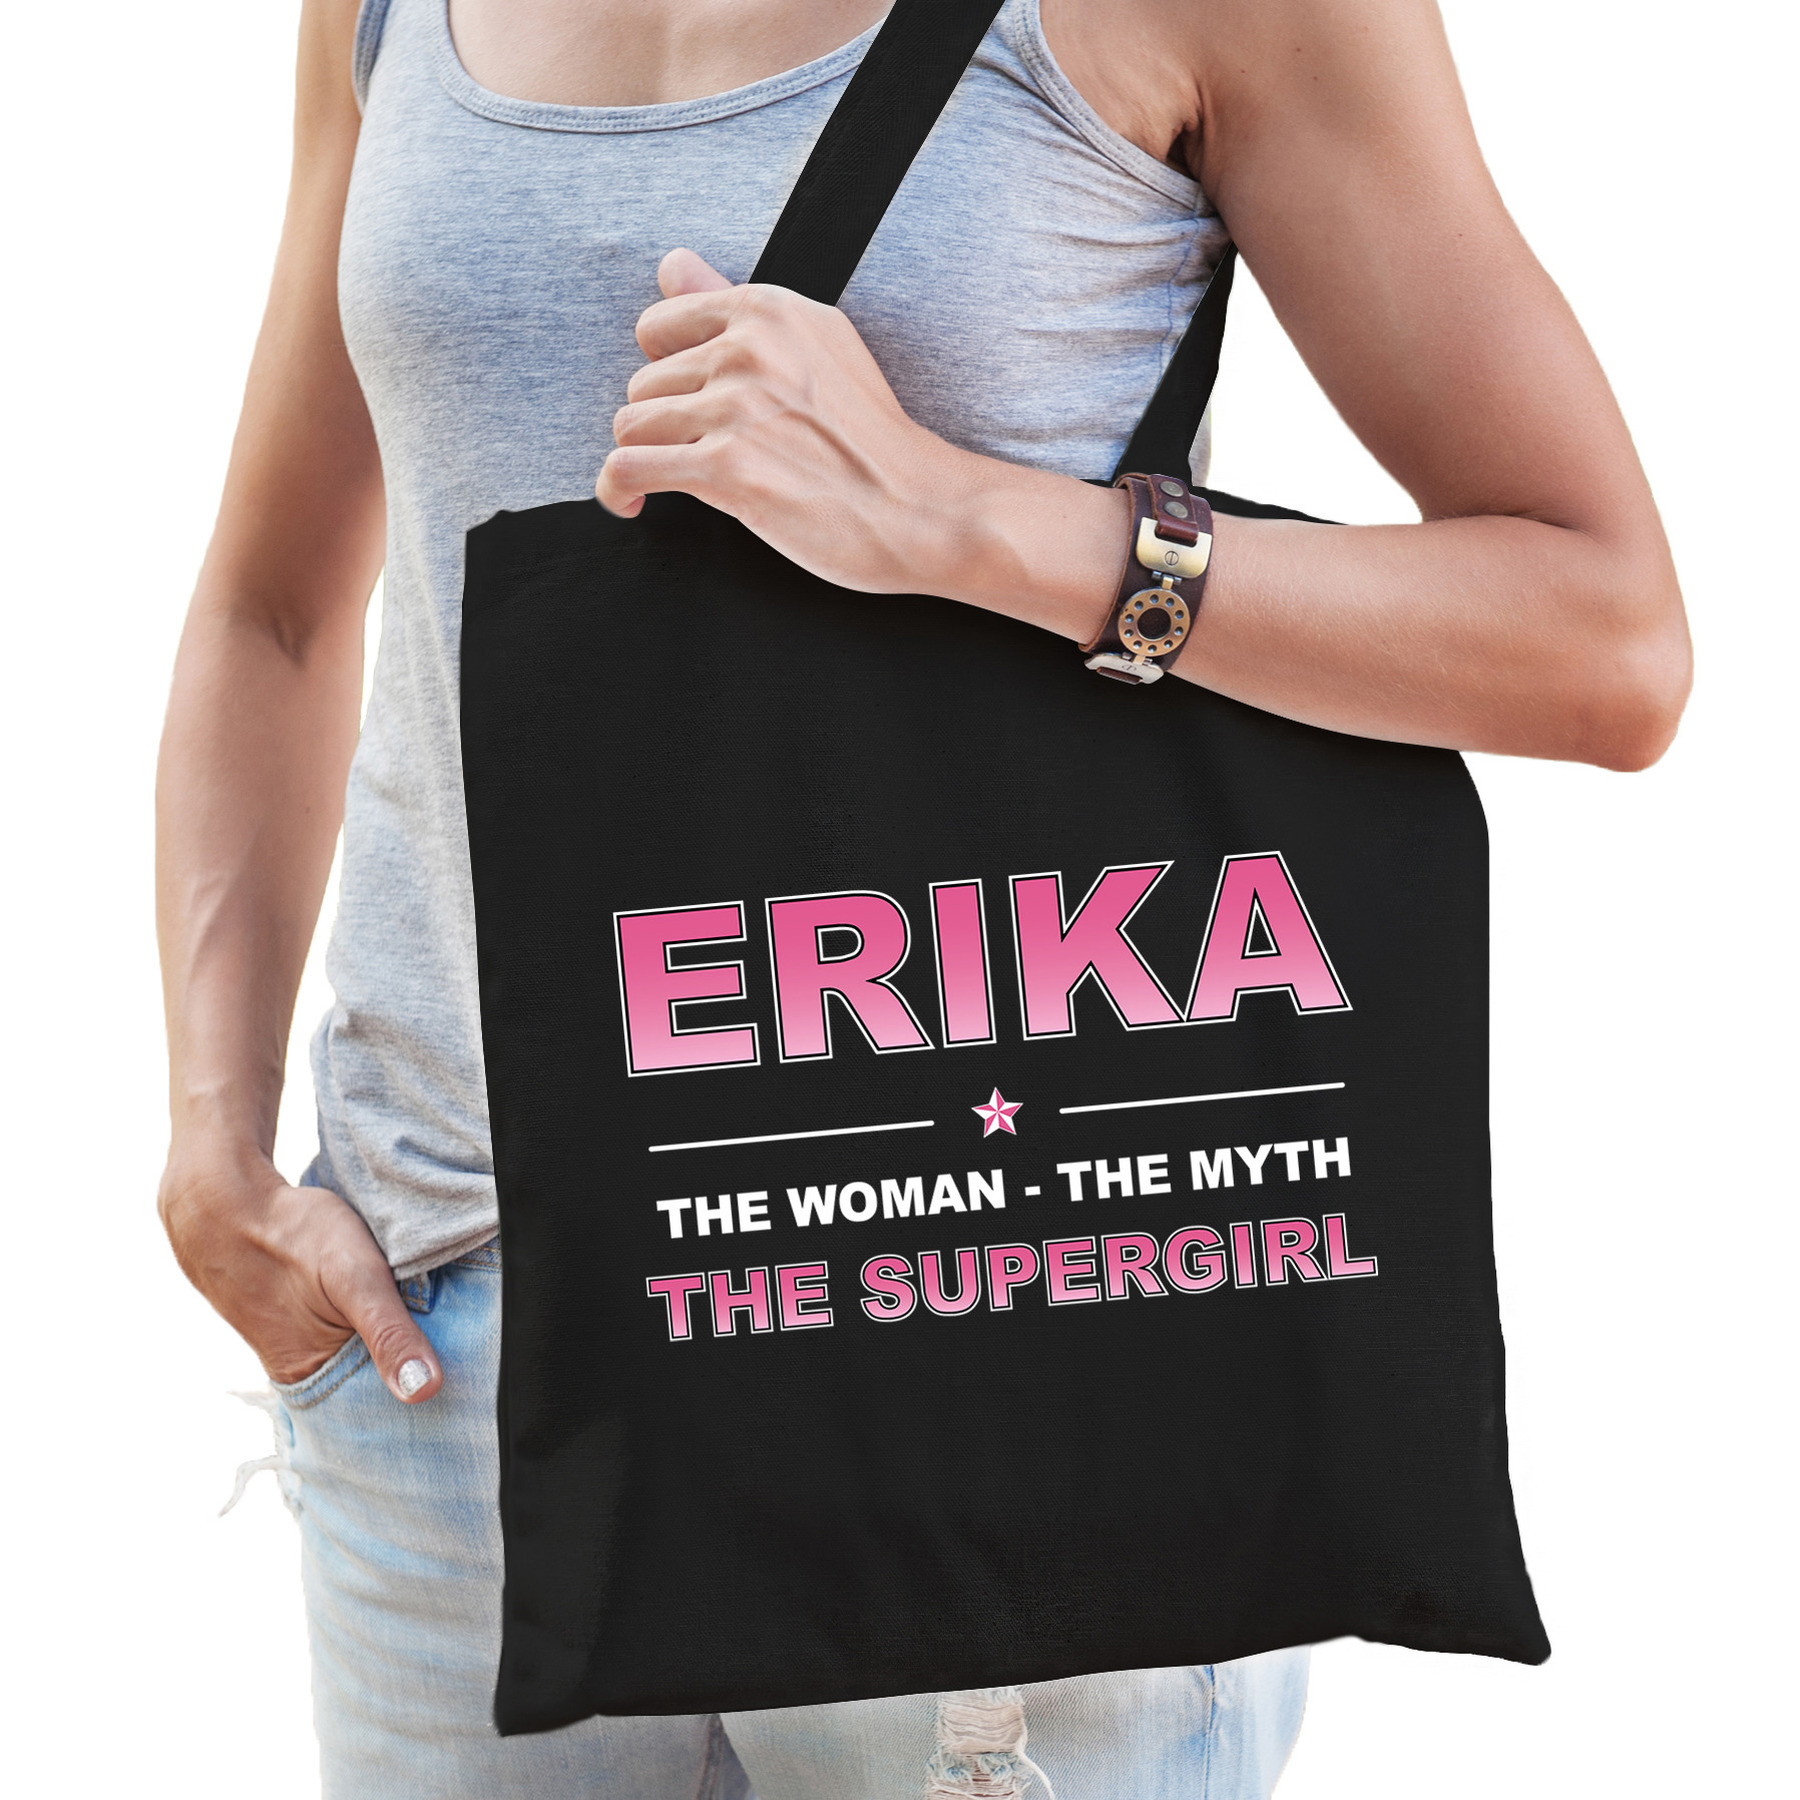 Naam Erika The women, The myth the supergirl tasje zwart Cadeau boodschappentasje